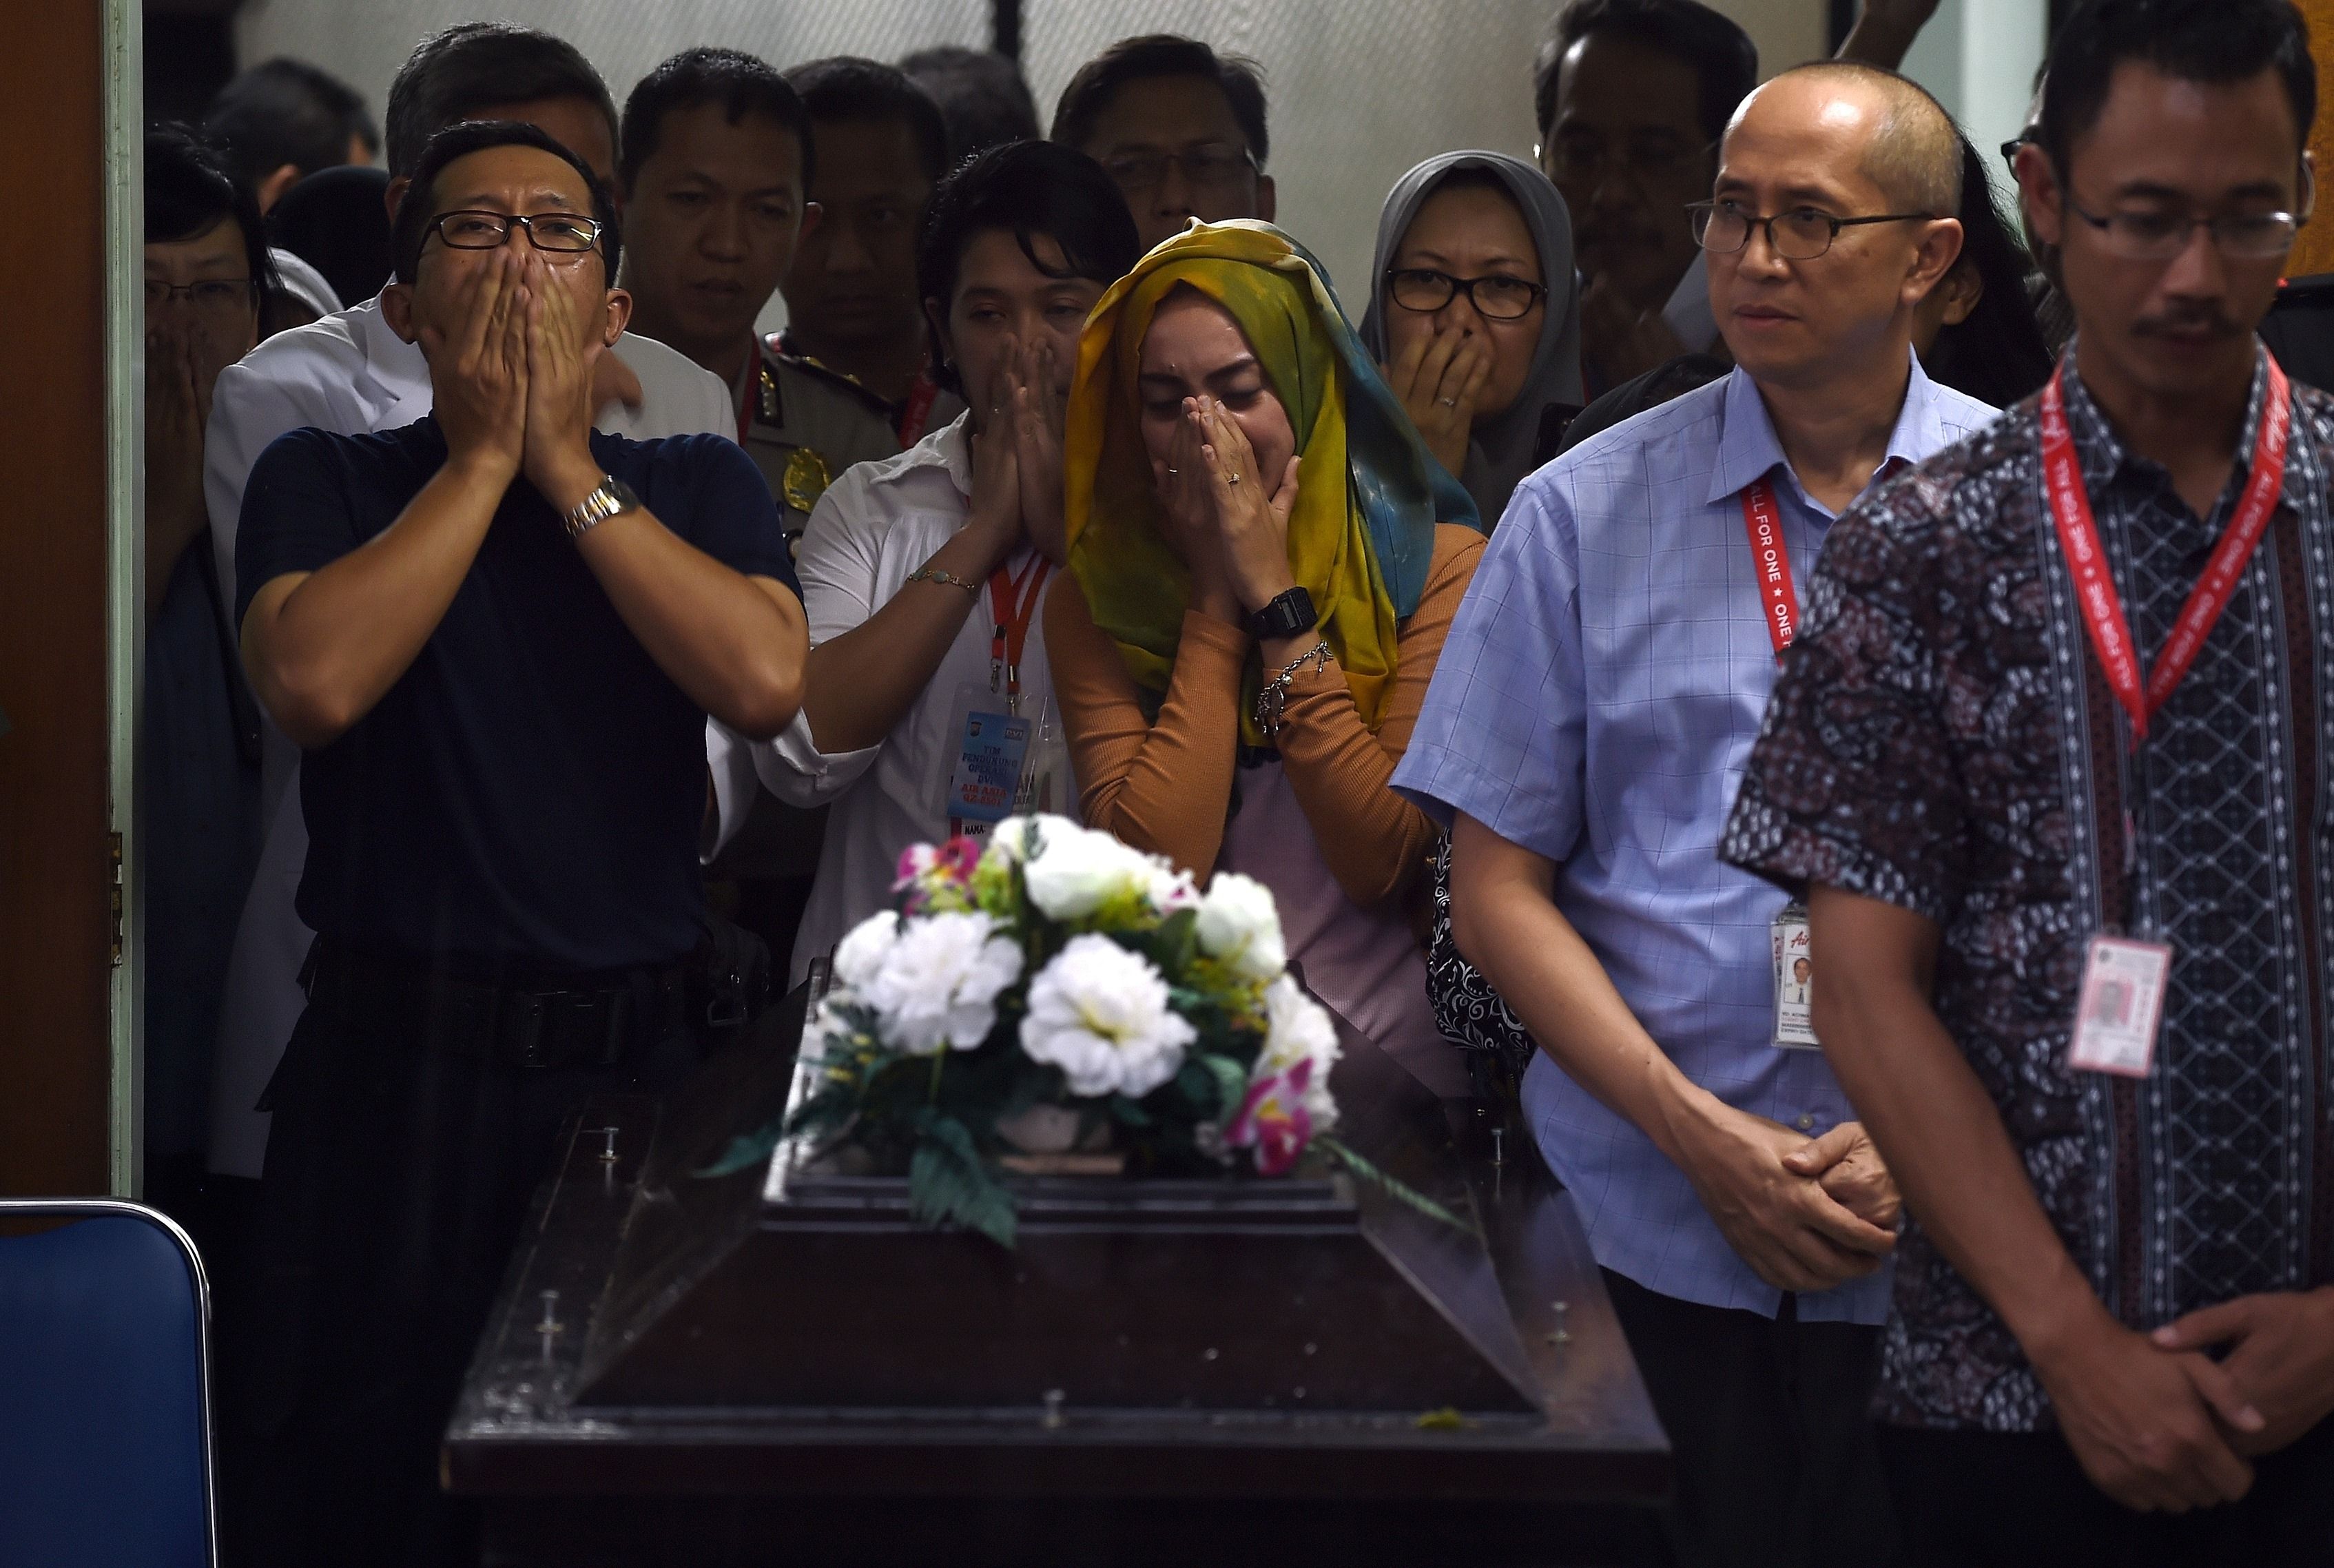 30 de cadavre ale persoanelor din avionul AirAsia prabusit, recuperate. Cinci dintre victime au fost gasite pe scaune